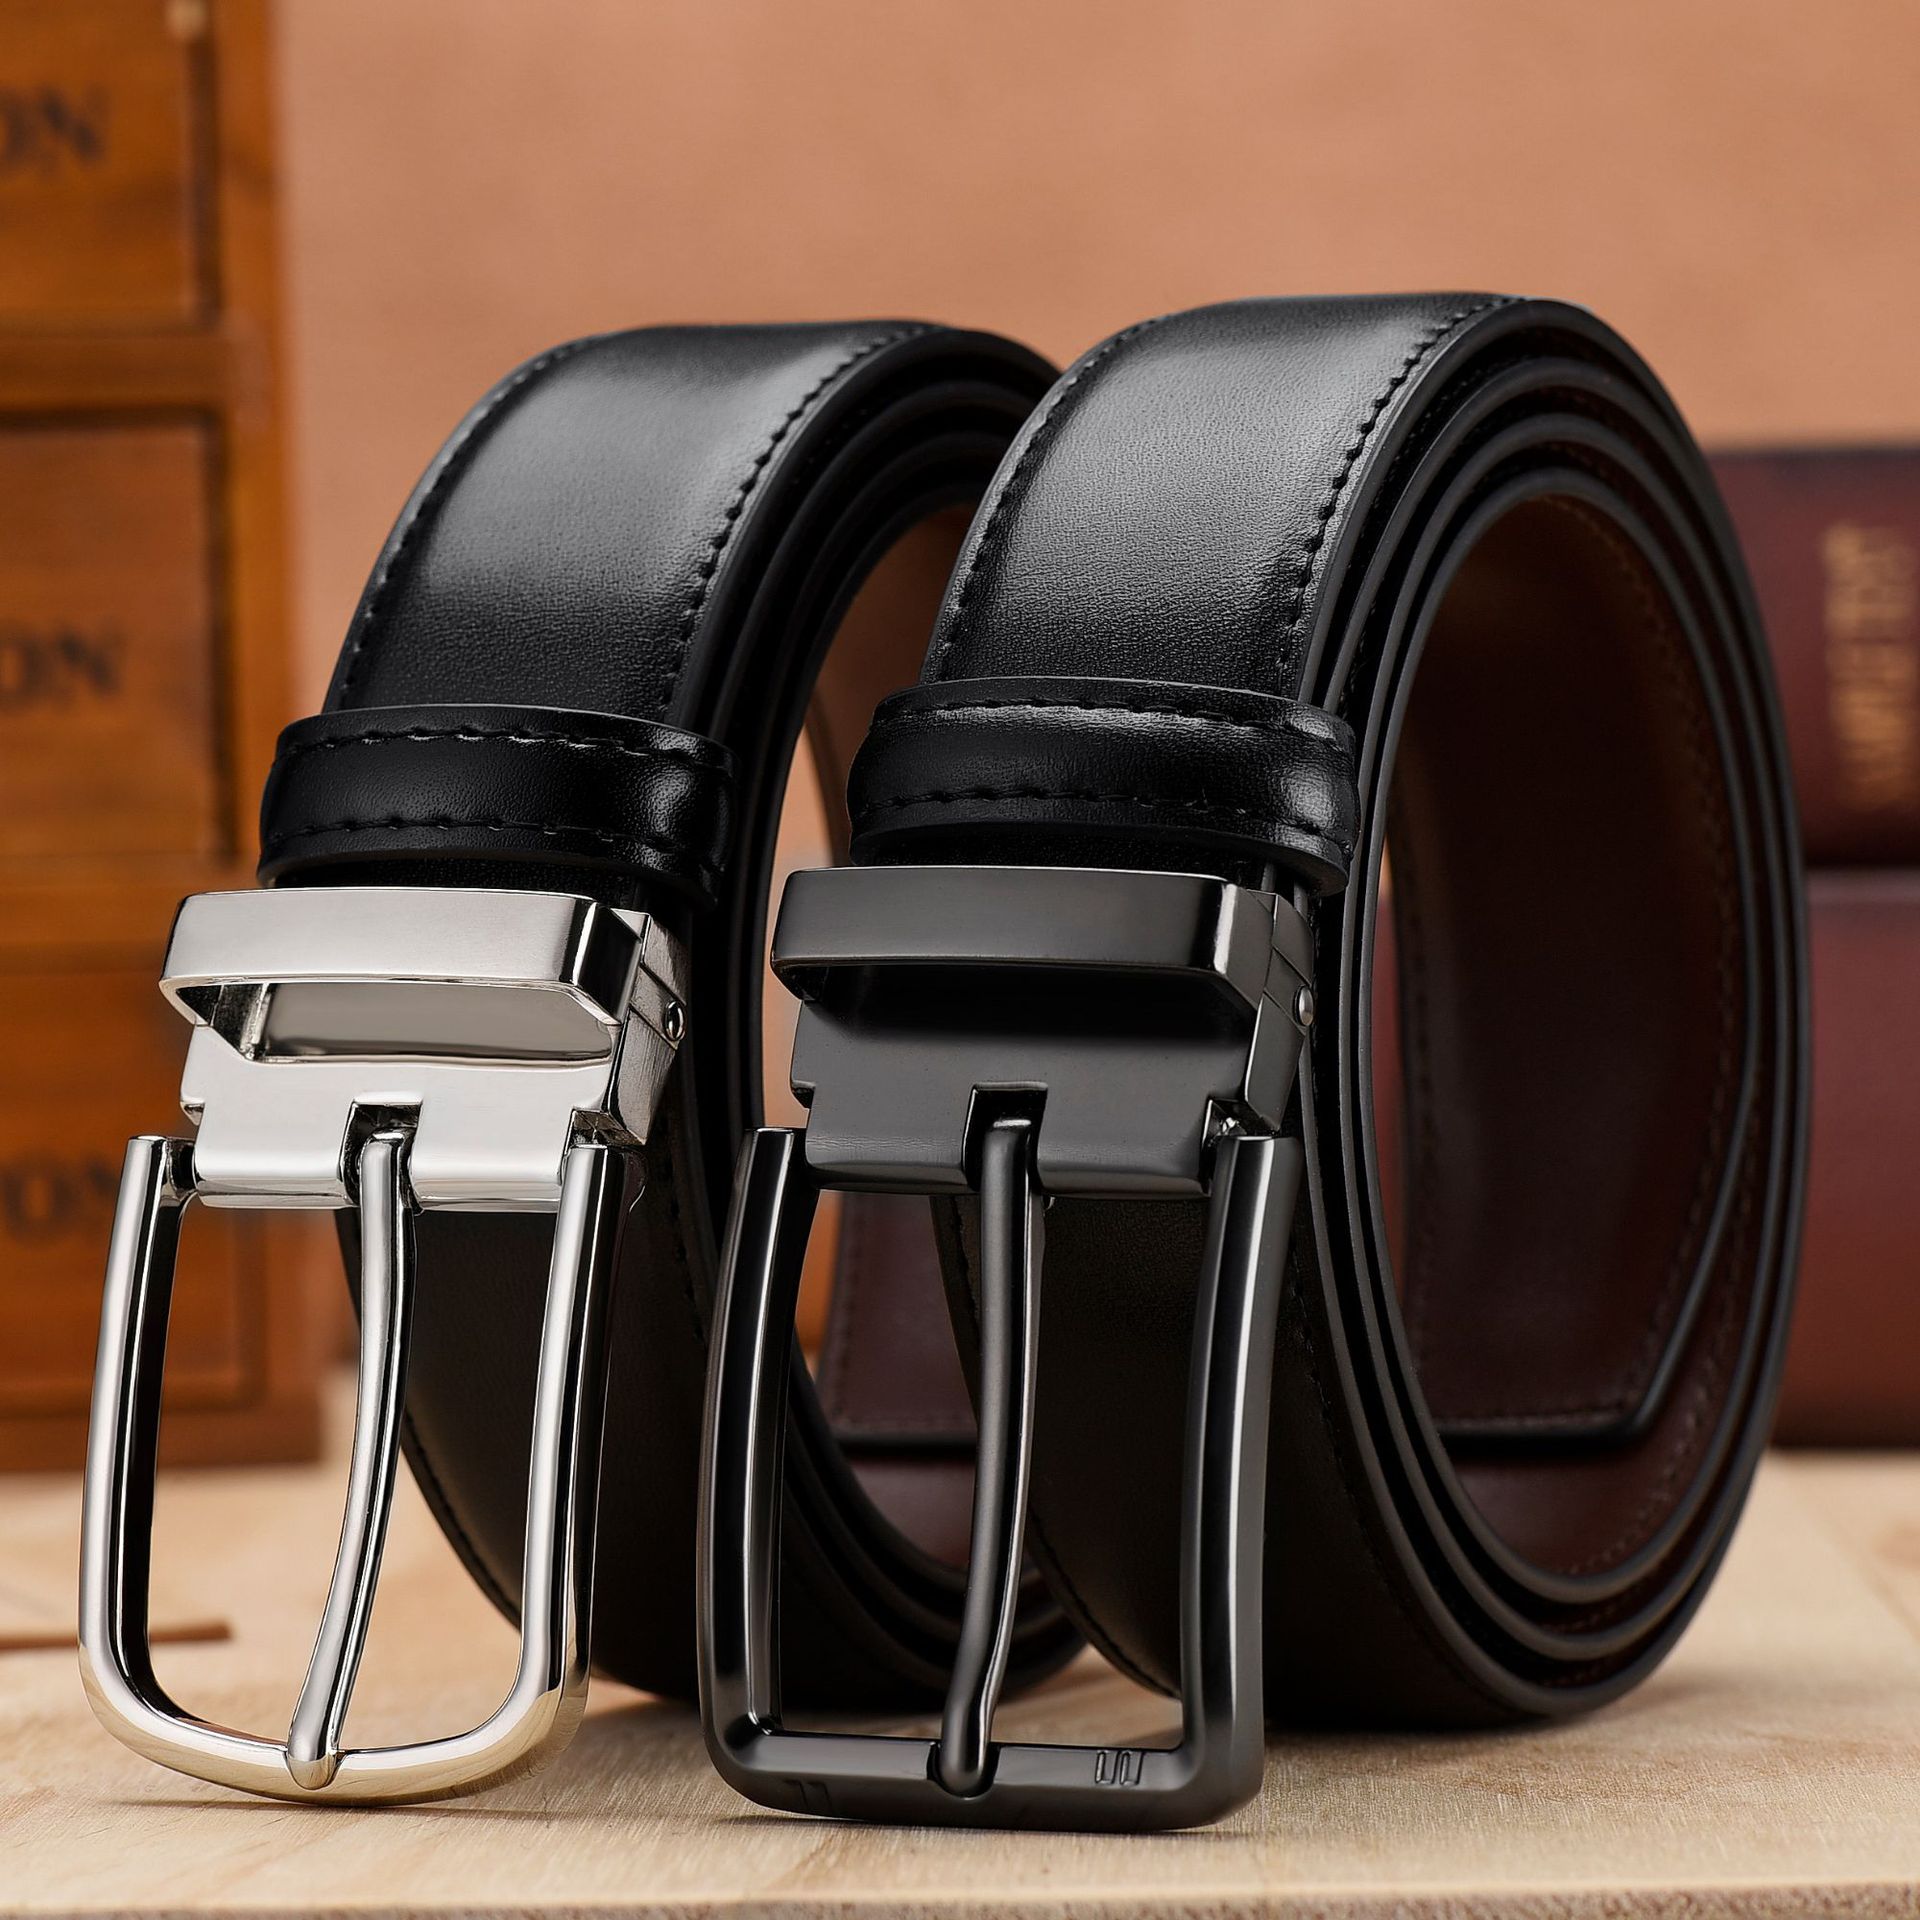 [Fule Leather] Cowhide Men‘s Leather Belt Men‘s Pin Buckle Belt Double-Sided Preferred Cowhide Belt